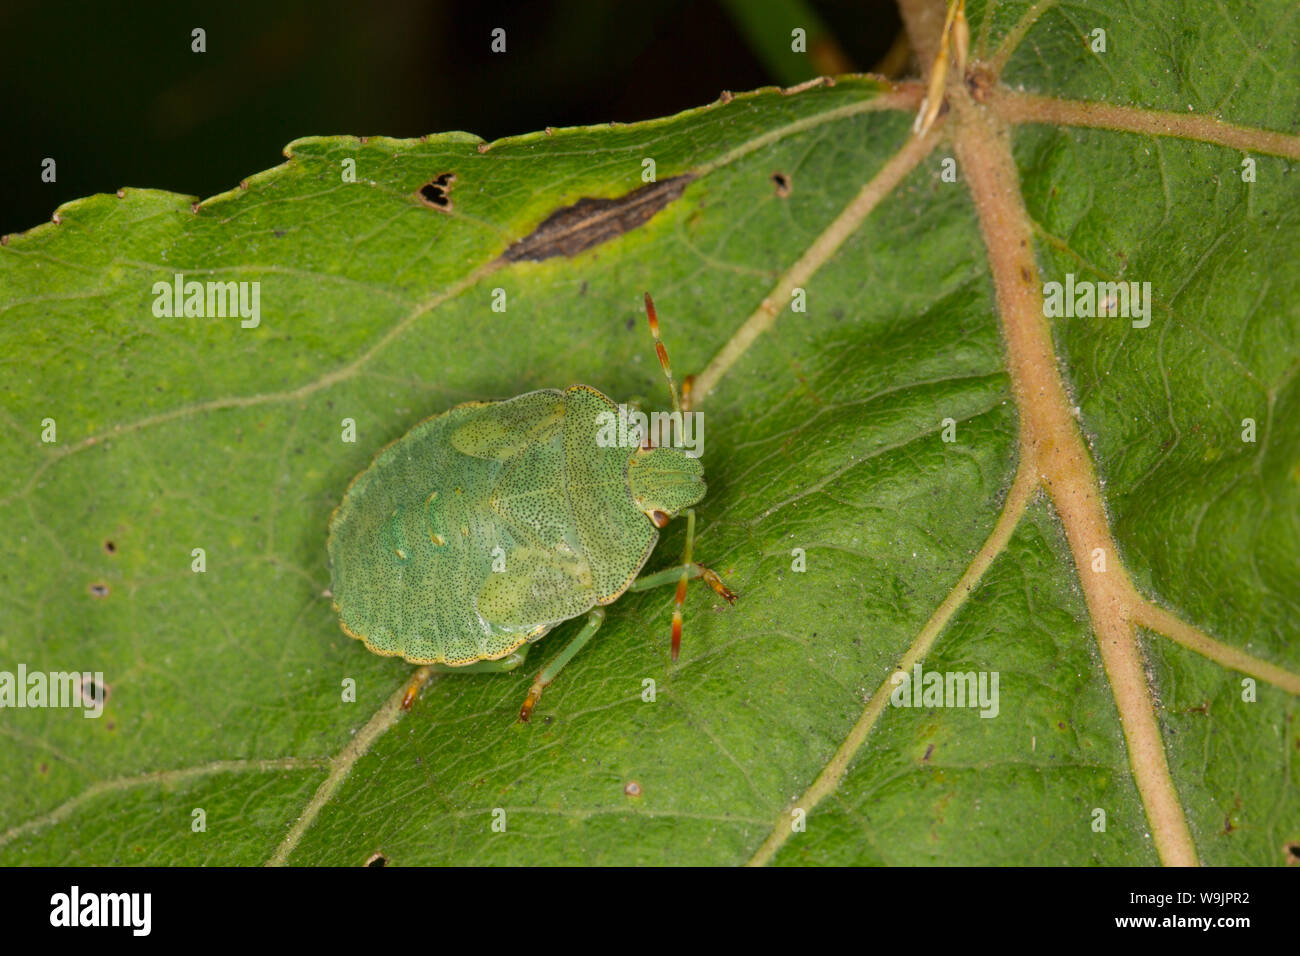 Un bug de Green Shield, Palomena prasina, photographié en août dans la région de North Dorset England UK GO Banque D'Images